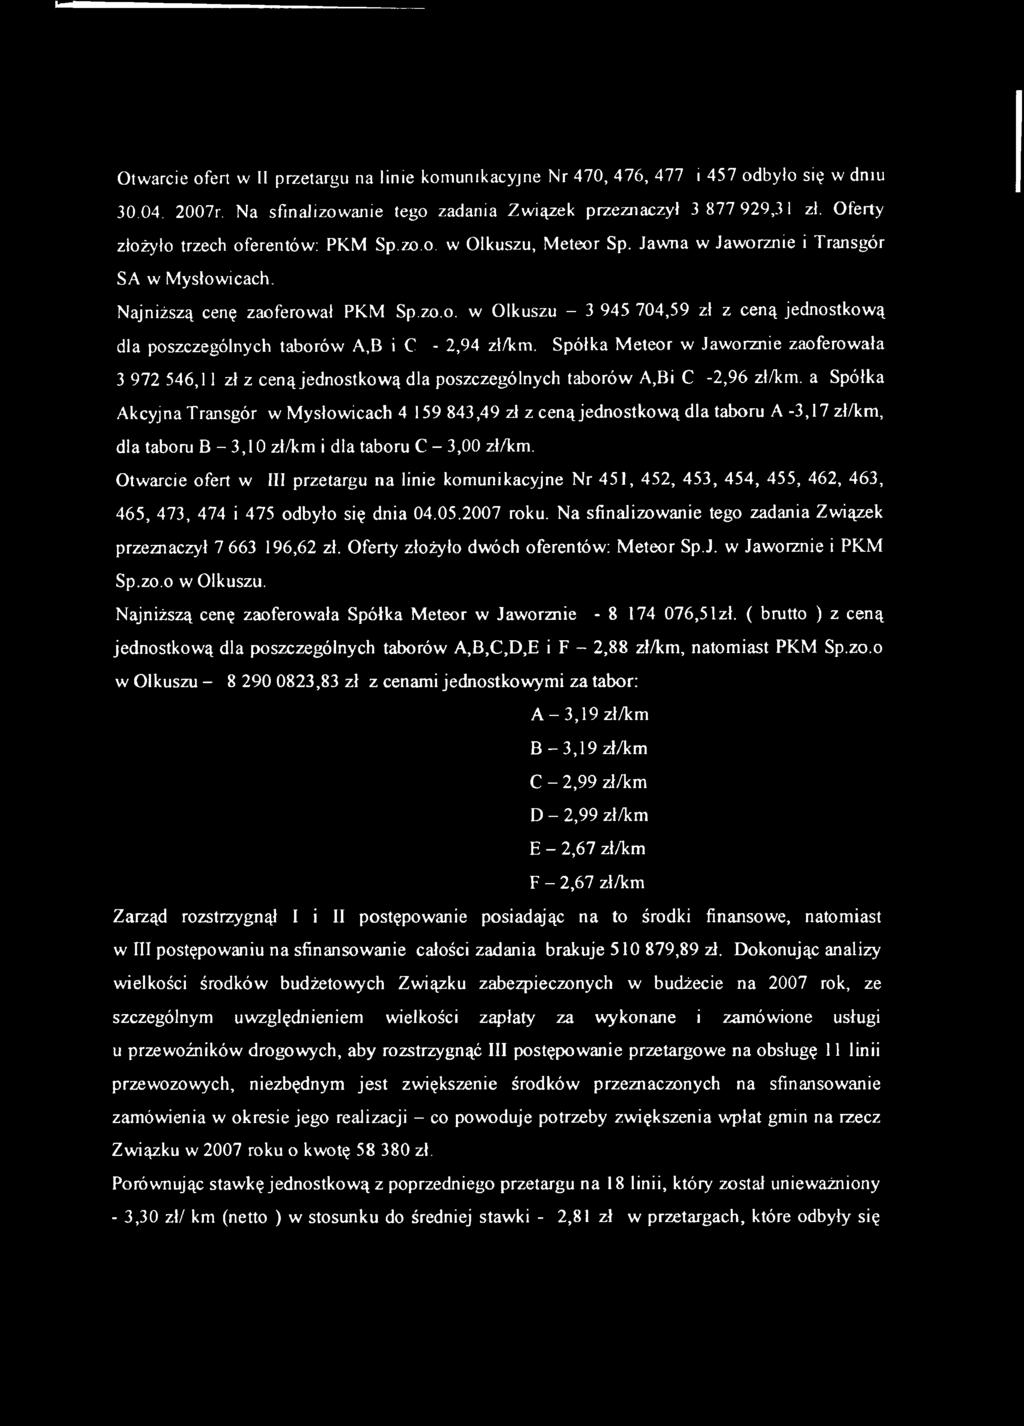 Spółka M eteor w Jaworznie zaoferowała 3 972 546,11 zł z ceną Jednostkow ą dla poszczególnycłi taborów A,Bi C -2,96 zł/km.